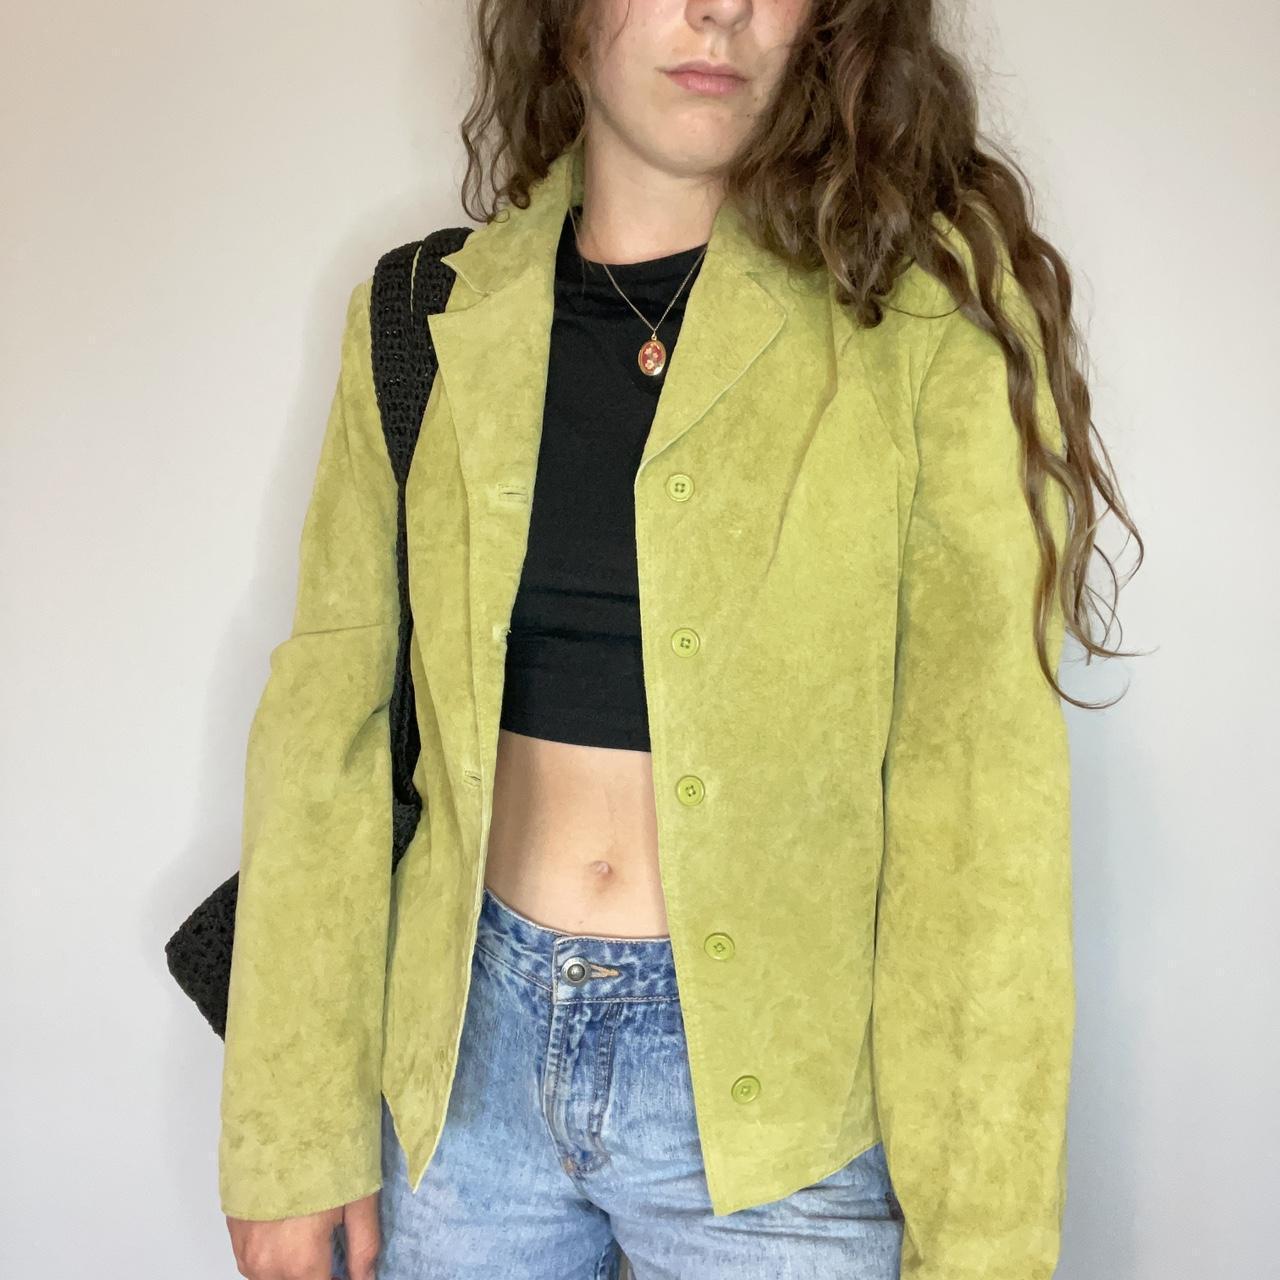 Insane lime green suede jacket! Size 6. Women’s... - Depop